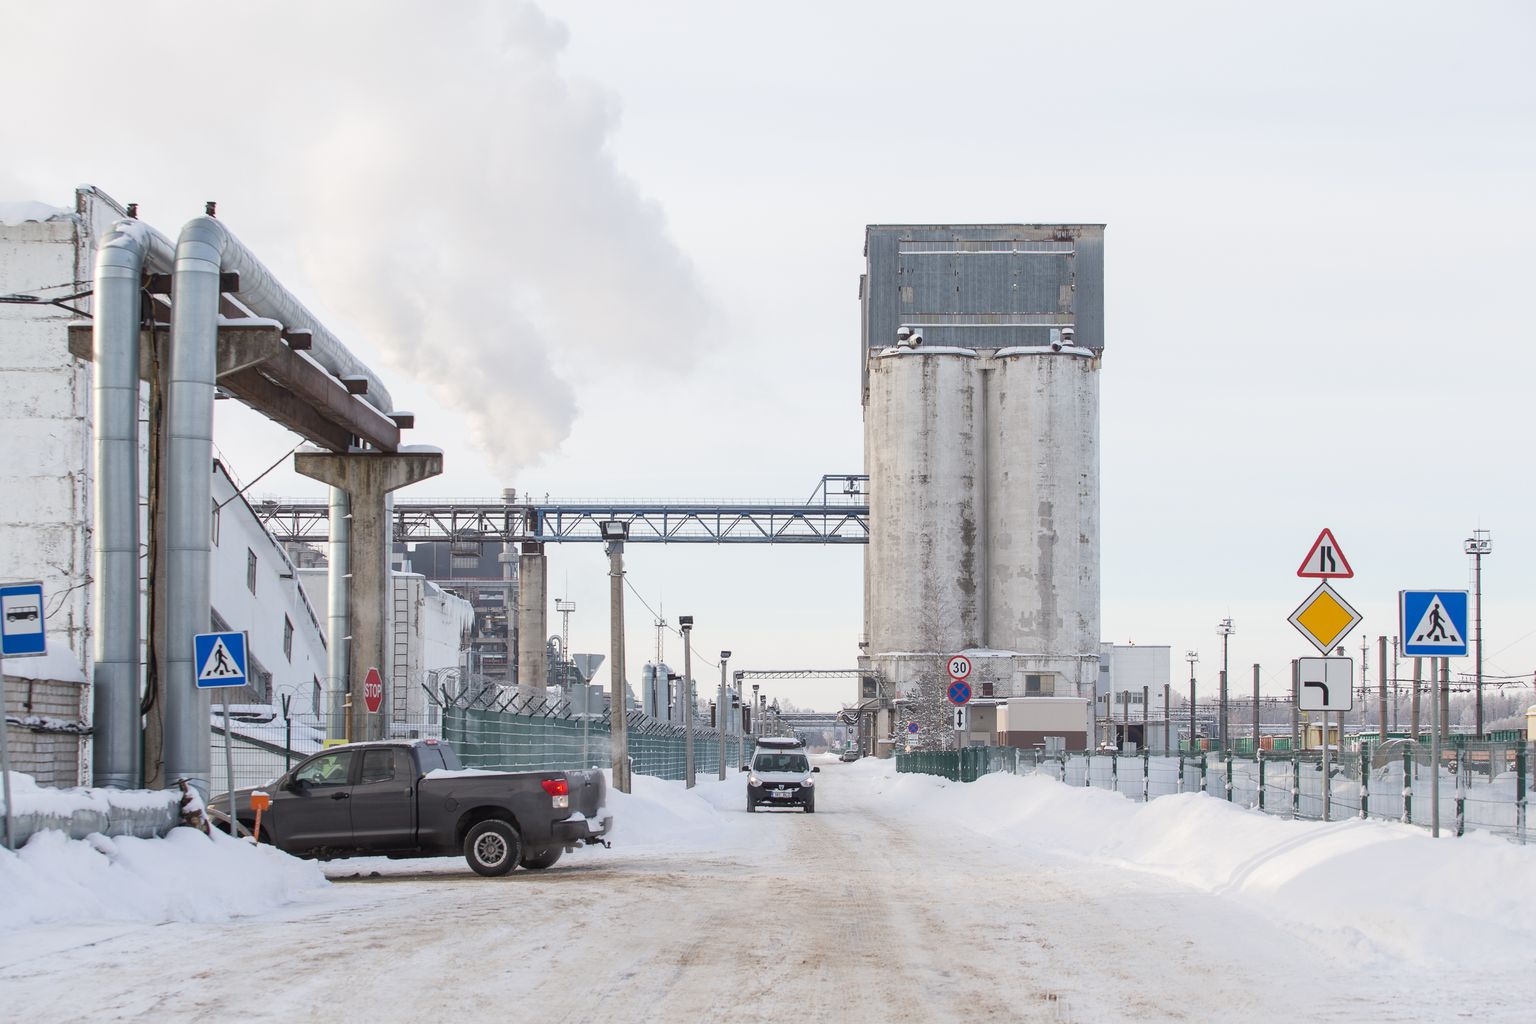 Kokku müüb Eesti Energia aastas 175 175 tonni põlevkivituhka ehitus- ja põllumajandussektorile. Tuhka hoiustatakse kaheksas silos.